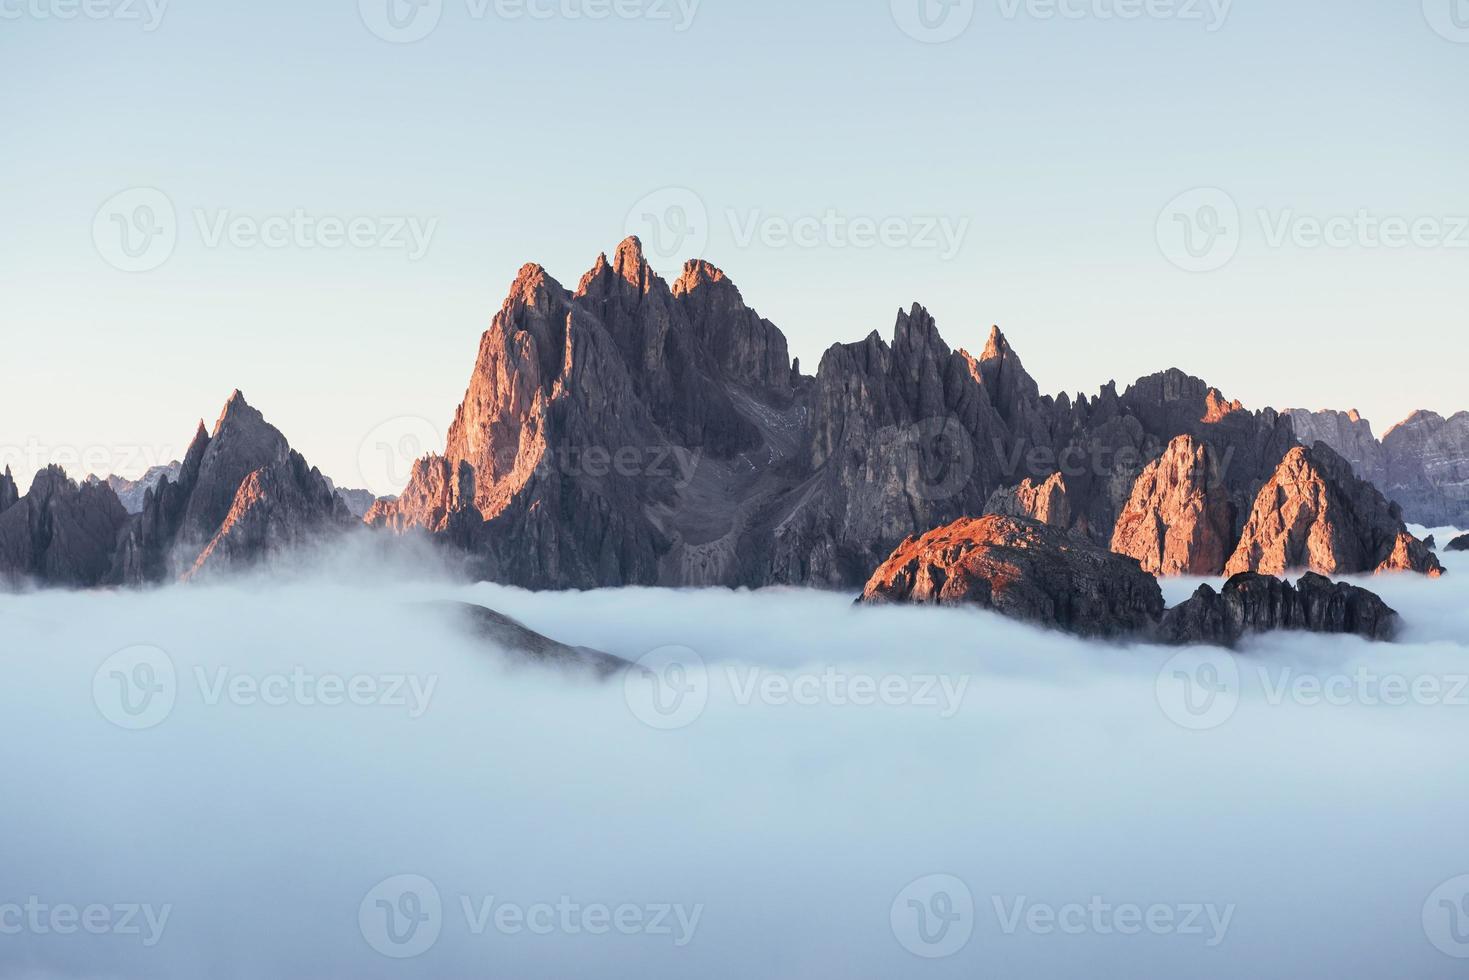 des rochers dormant sous une brume englobante. les sommets des montagnes étouffent d'un épais brouillard. photo incroyable prend